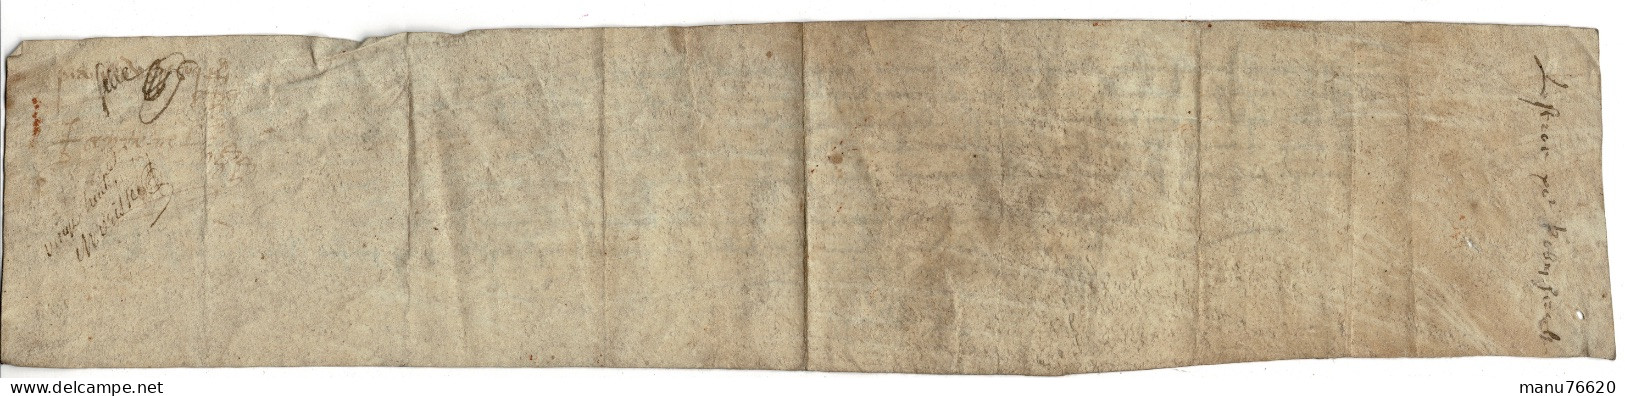 Ref 2 - RARE!, Lettre, Document Notarial , Le Havre Et Environs , écritures Très Anciennes , Papier épais. - Manuscrits